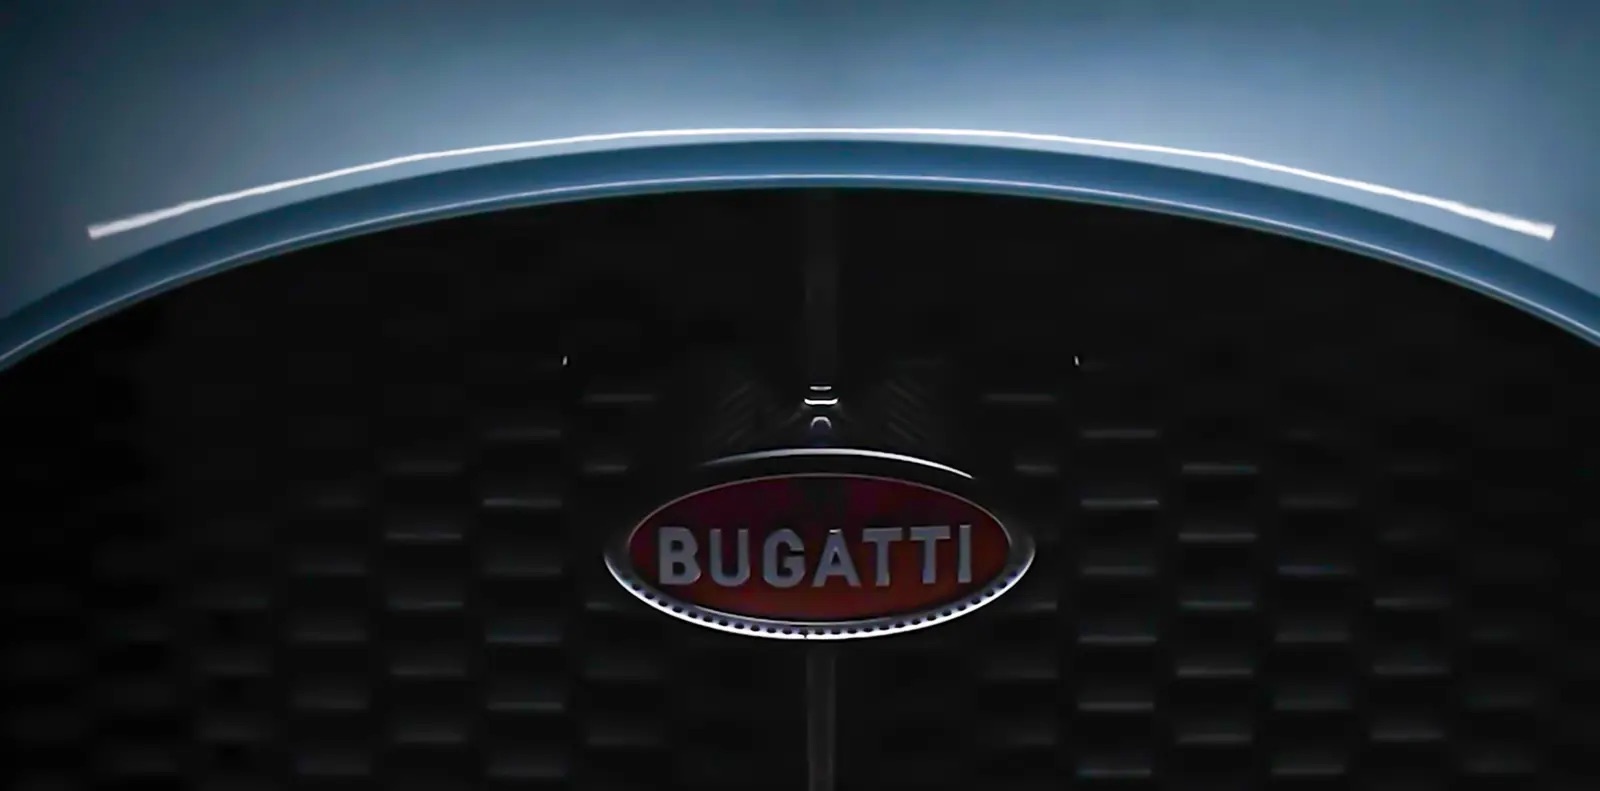 بوغاتي ستقوم  بإطلاق خليفة سيارة شيرون بمحرك V16 في 20 يونيو الجاري